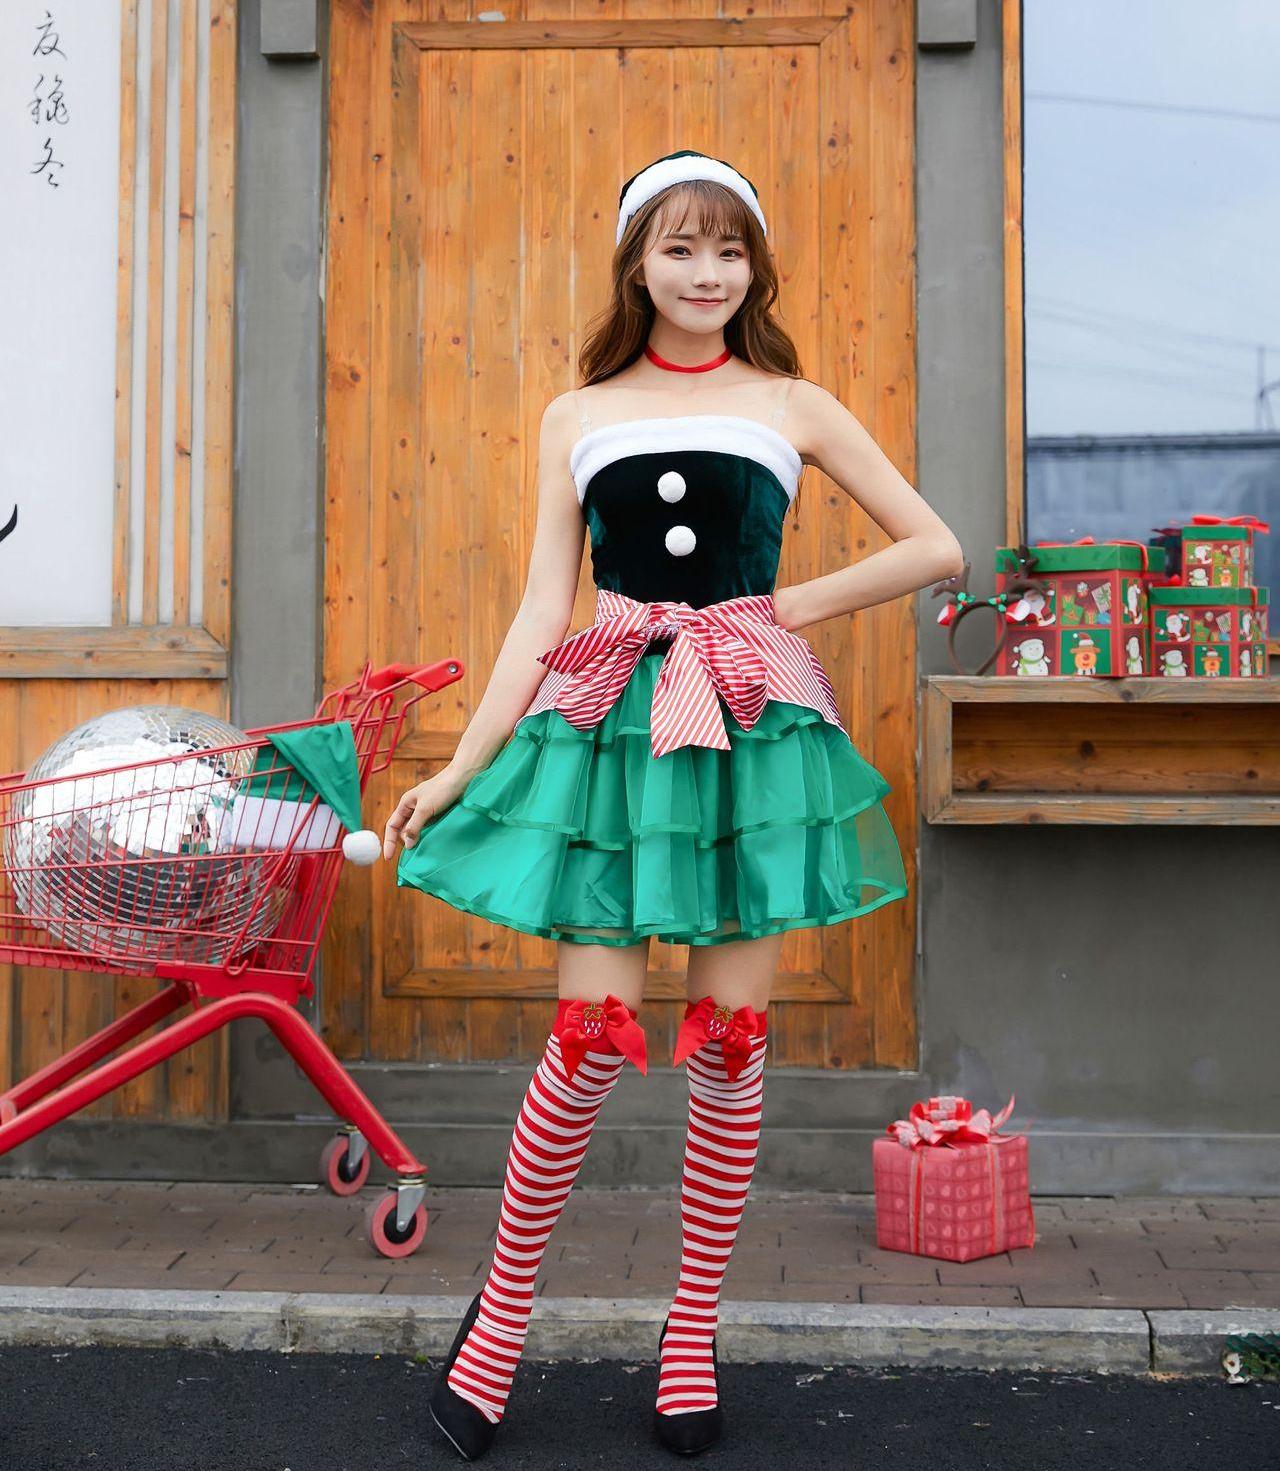 クリスマス服クリスマスワンピース可愛らしいワンピースCOSPLAY XY2-25508